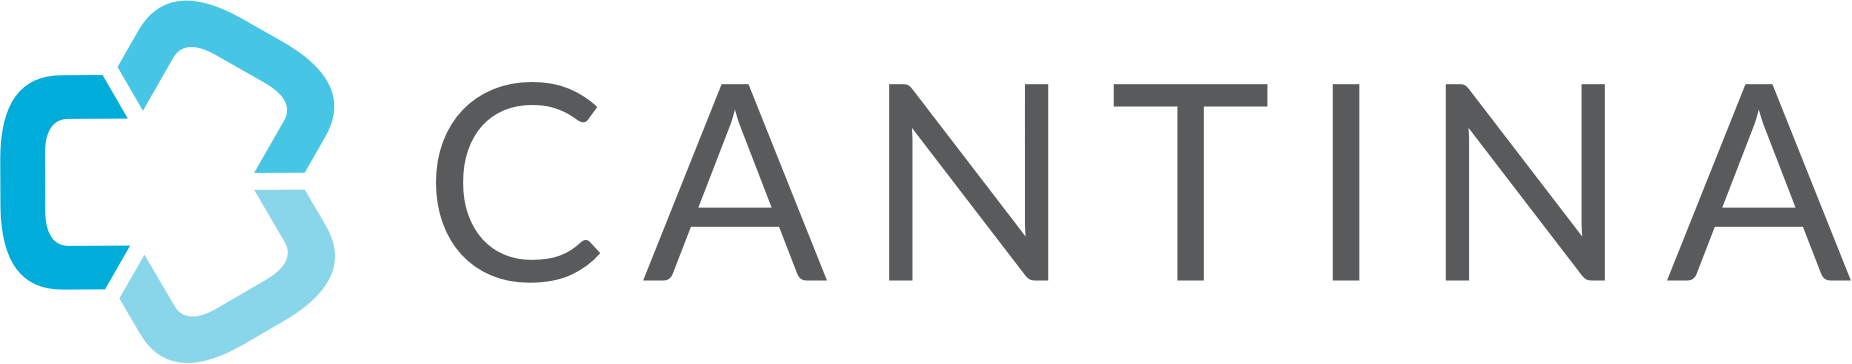 Cantina logo